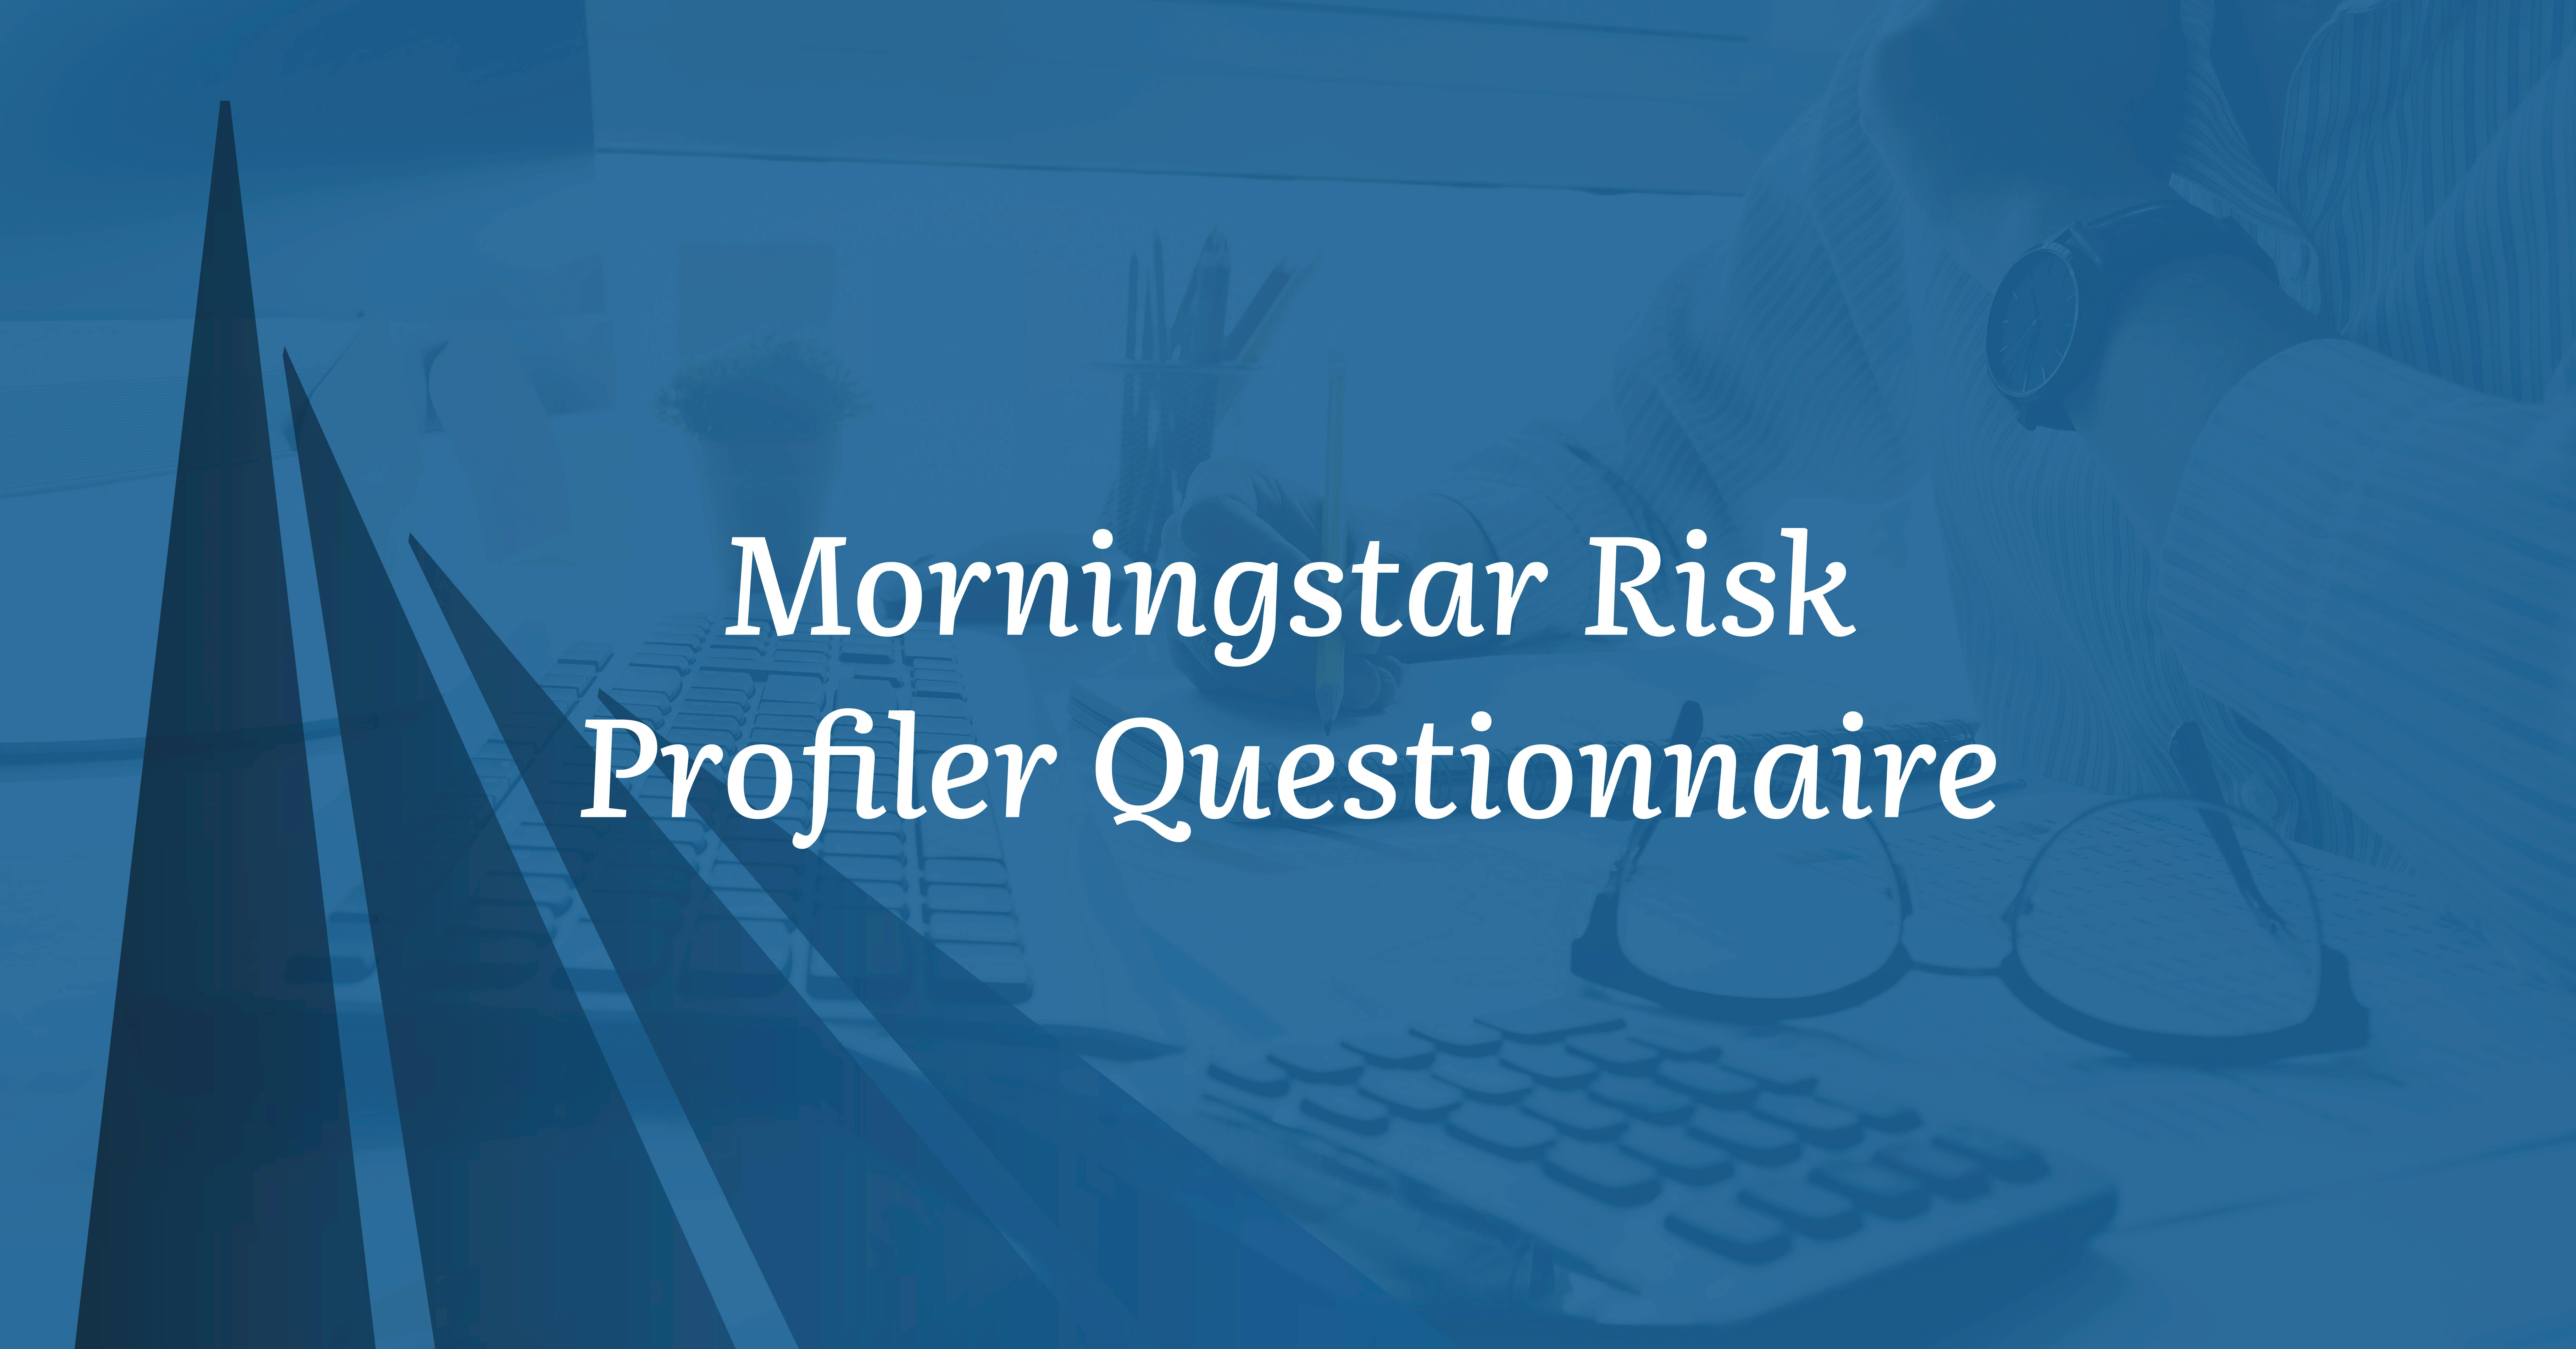 Morningstar Risk Profiler Questionnaire